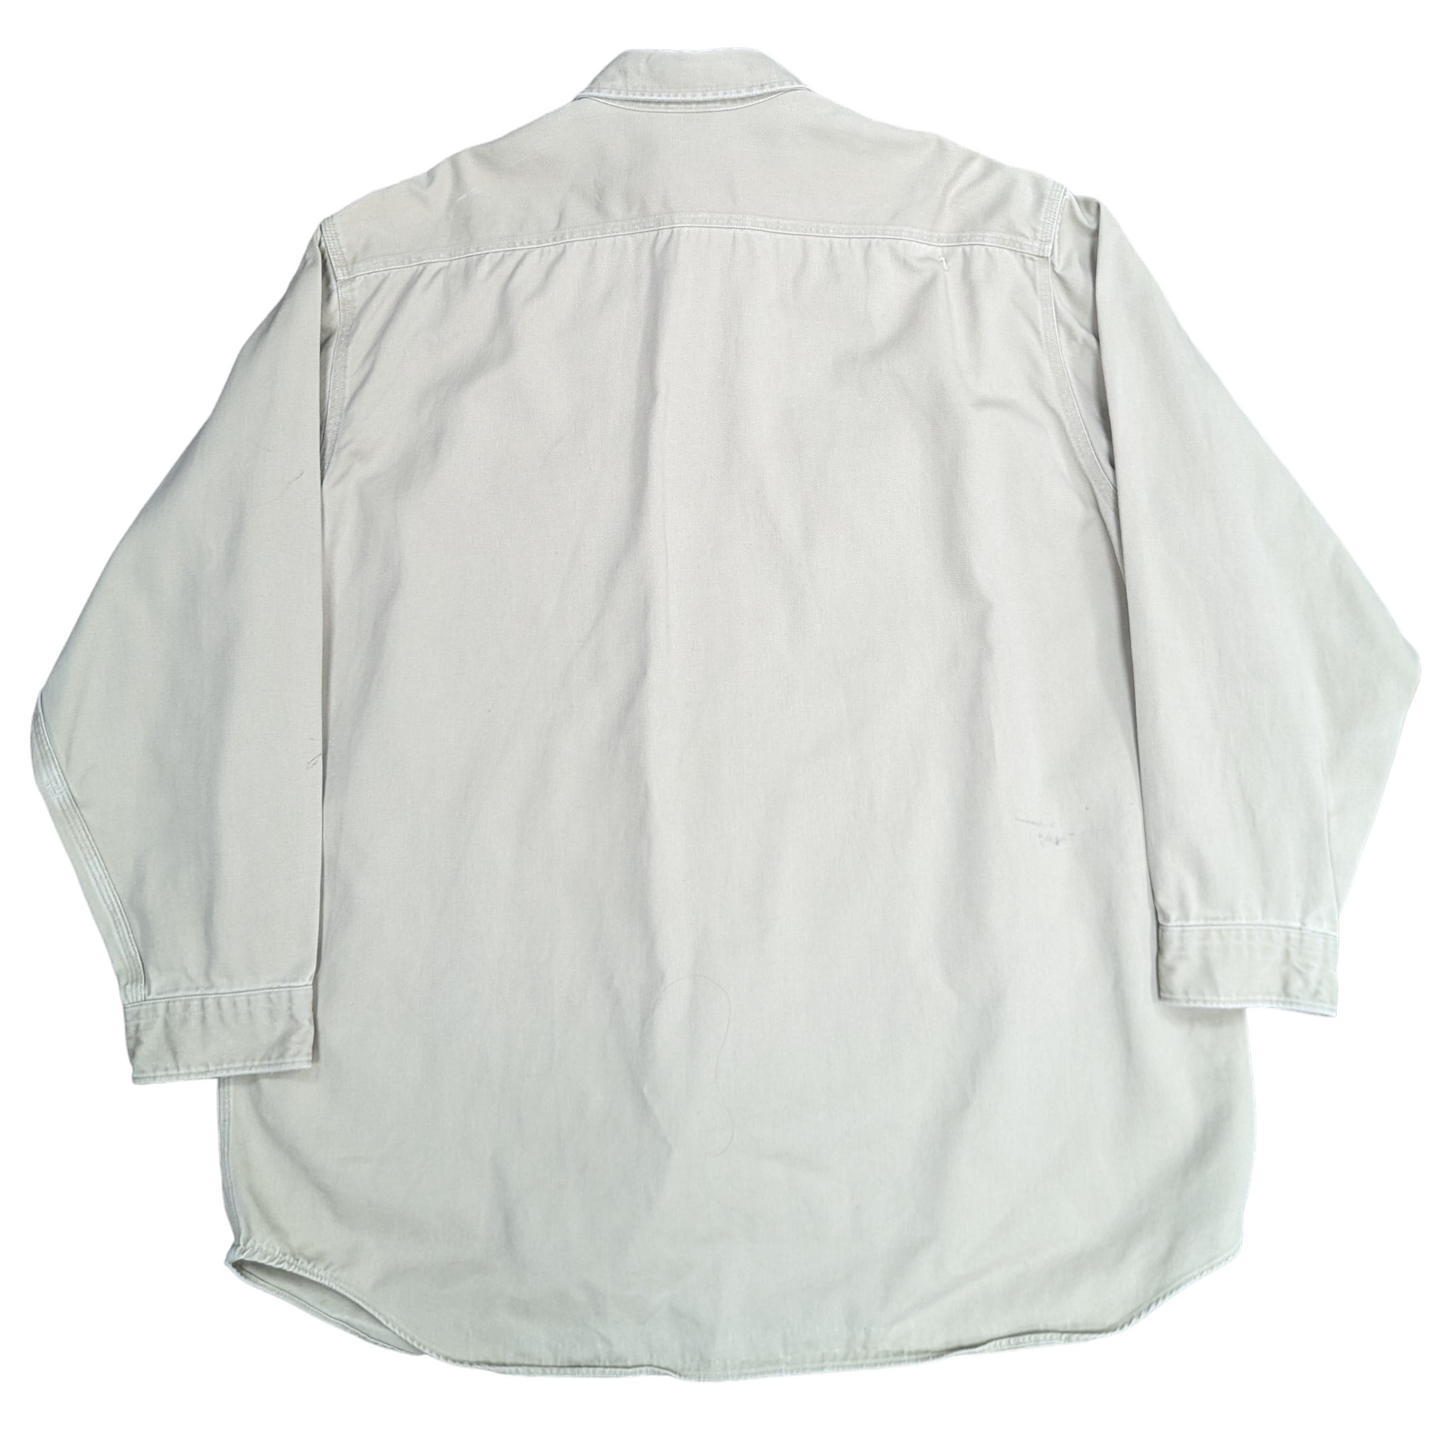 Carhartt Shirt Size 3XL